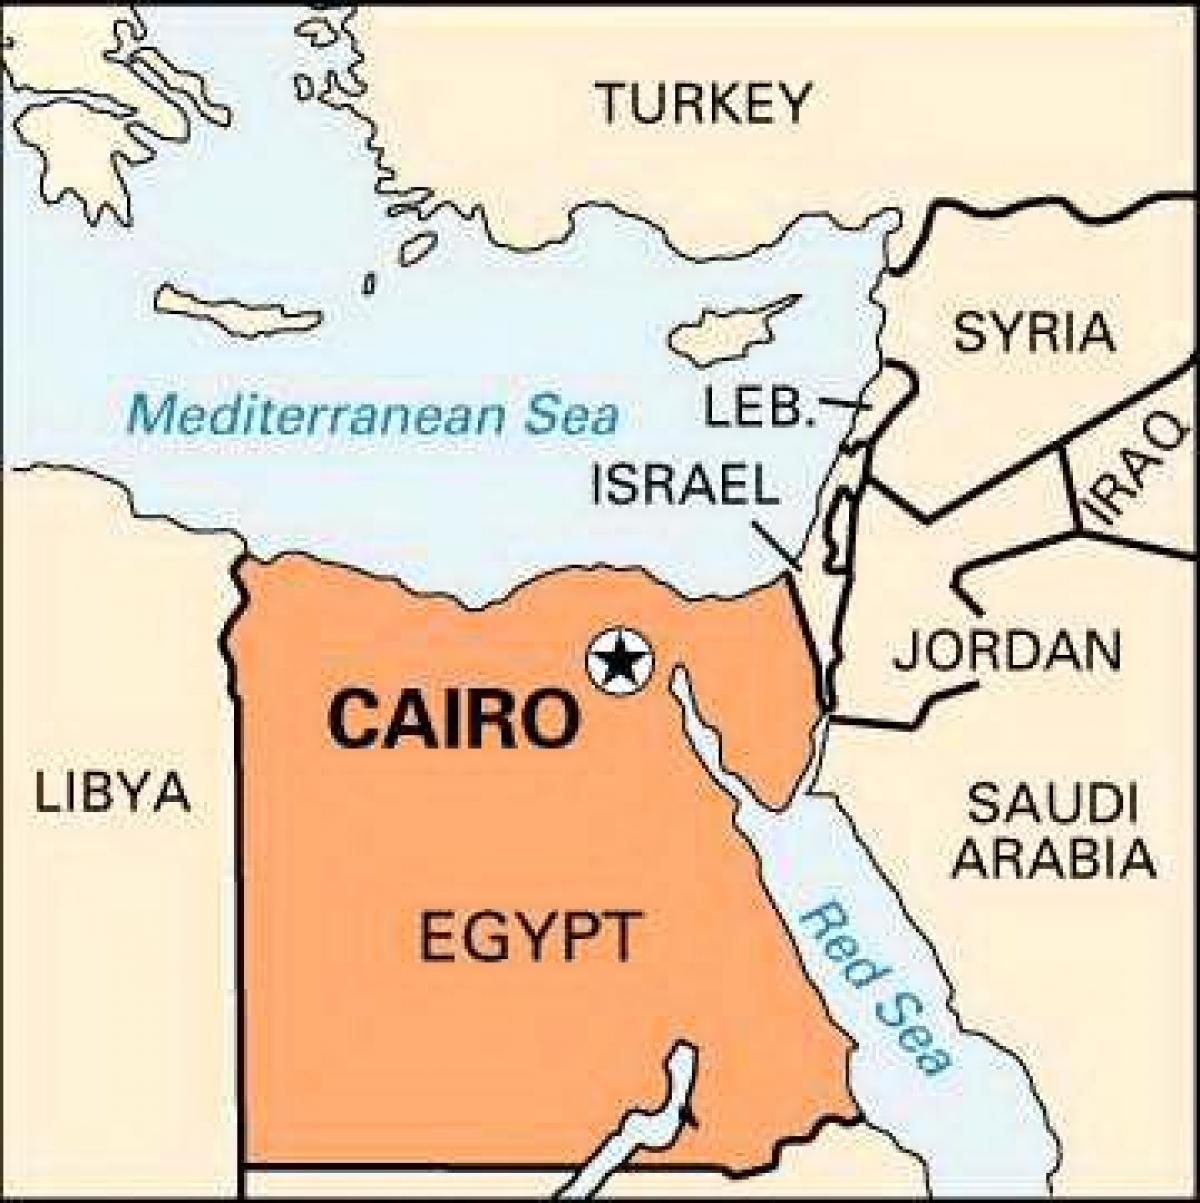 Kaart van caïro locatie